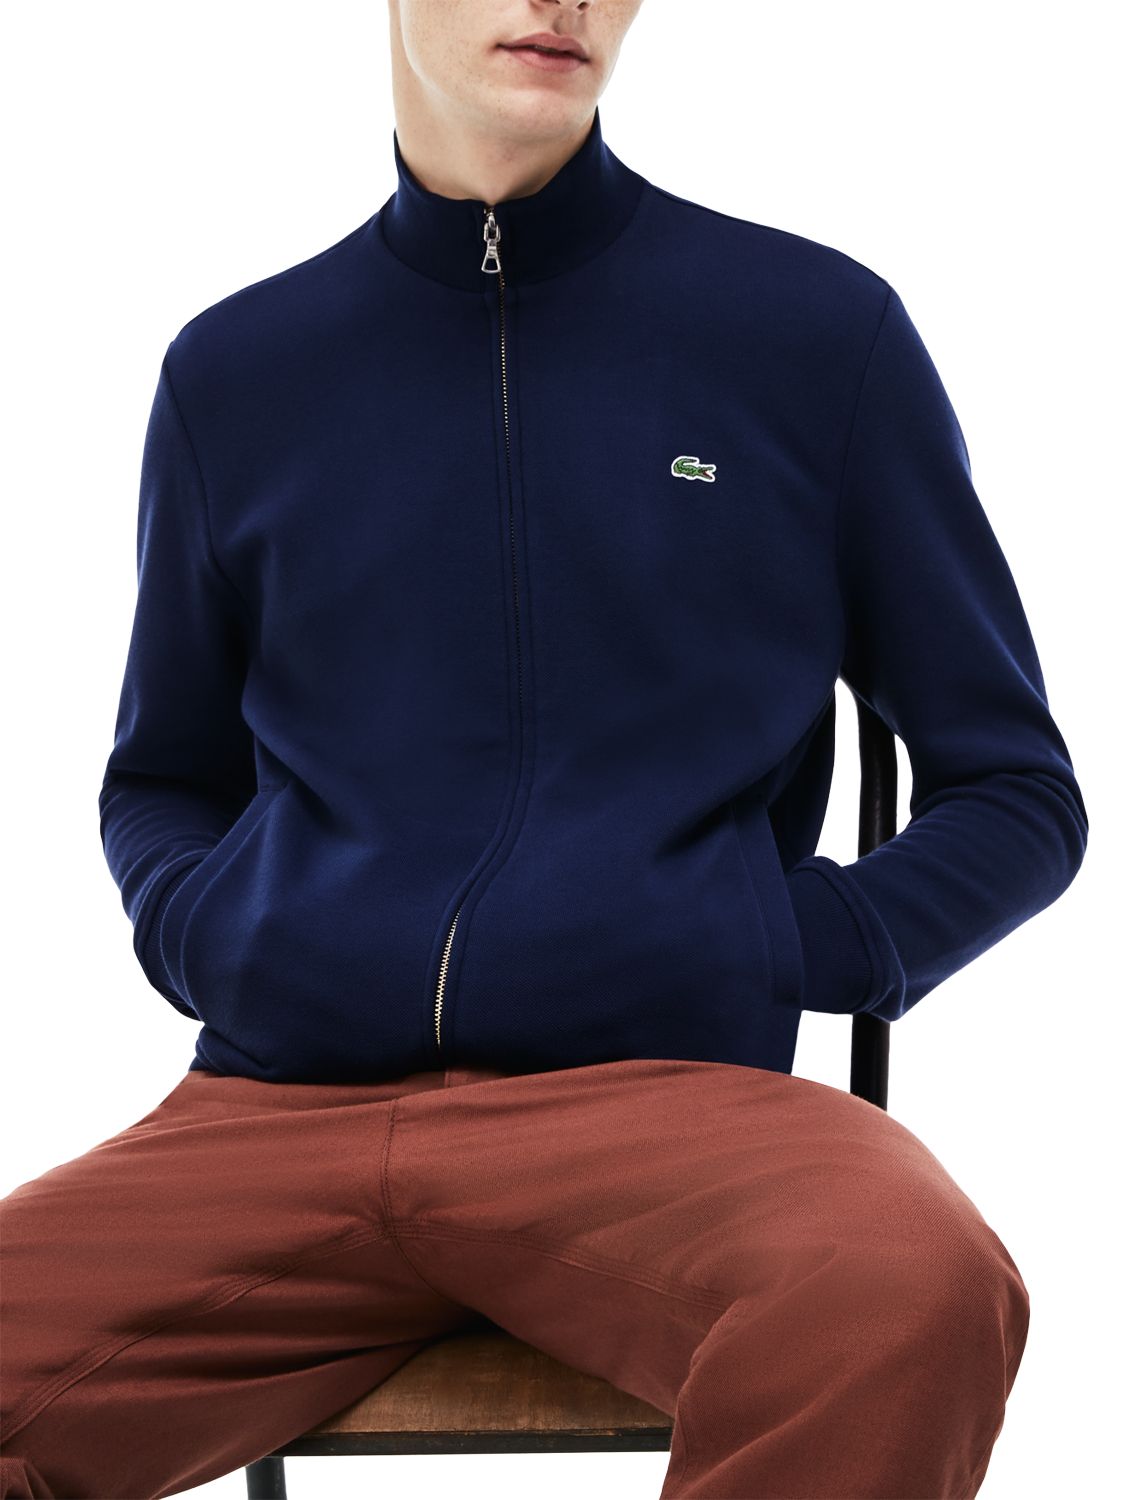 Lacoste Classic Zip Through Sweatshirt, Navy, XXL